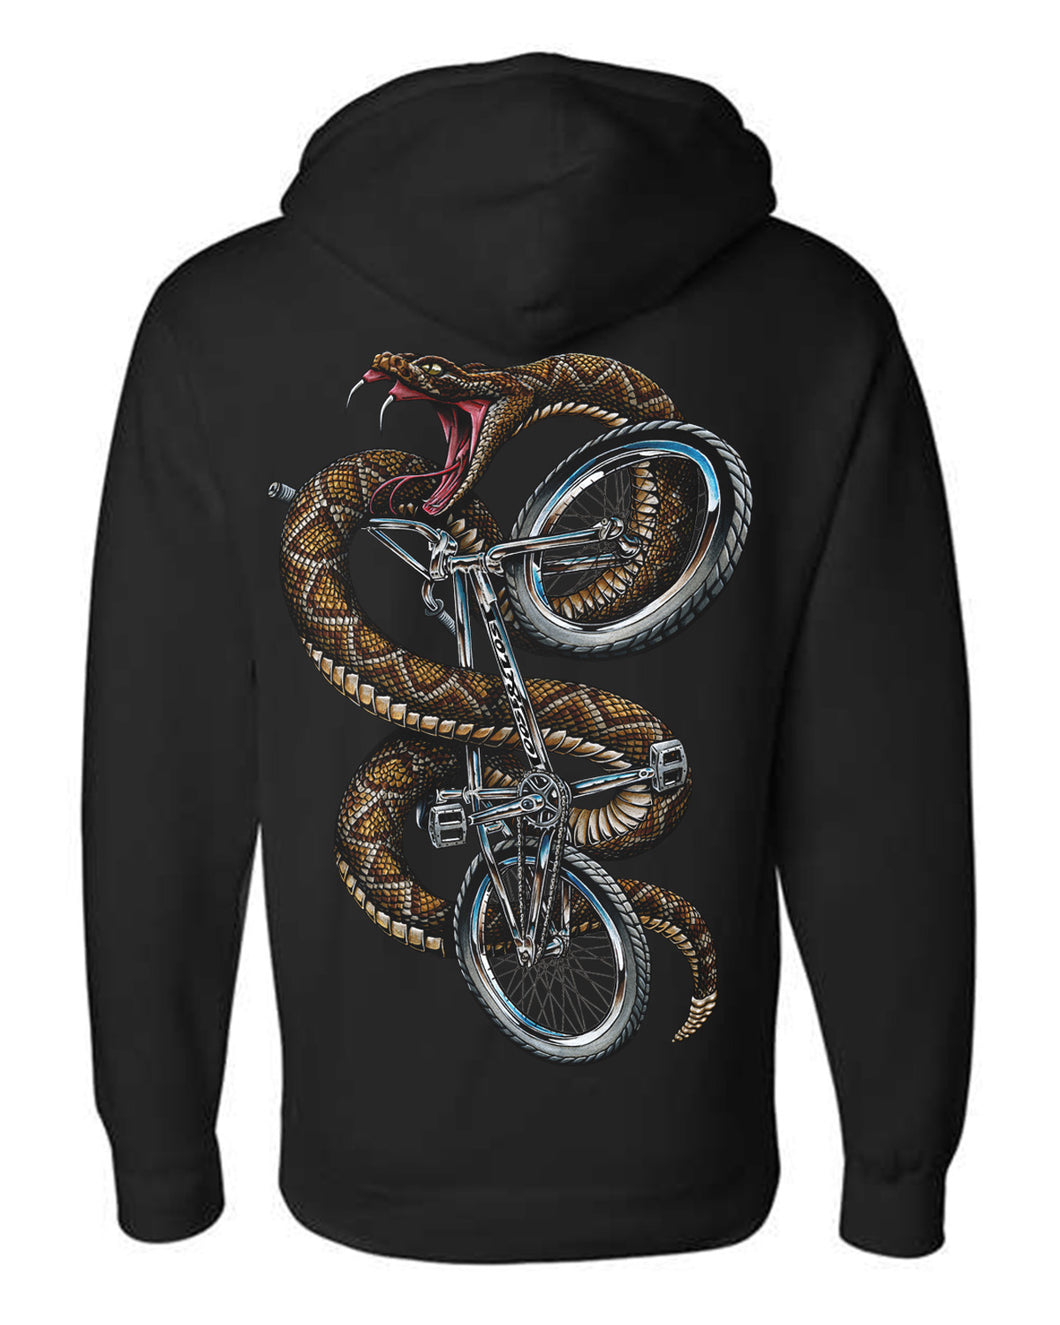 Sidewinder BMX hoodie